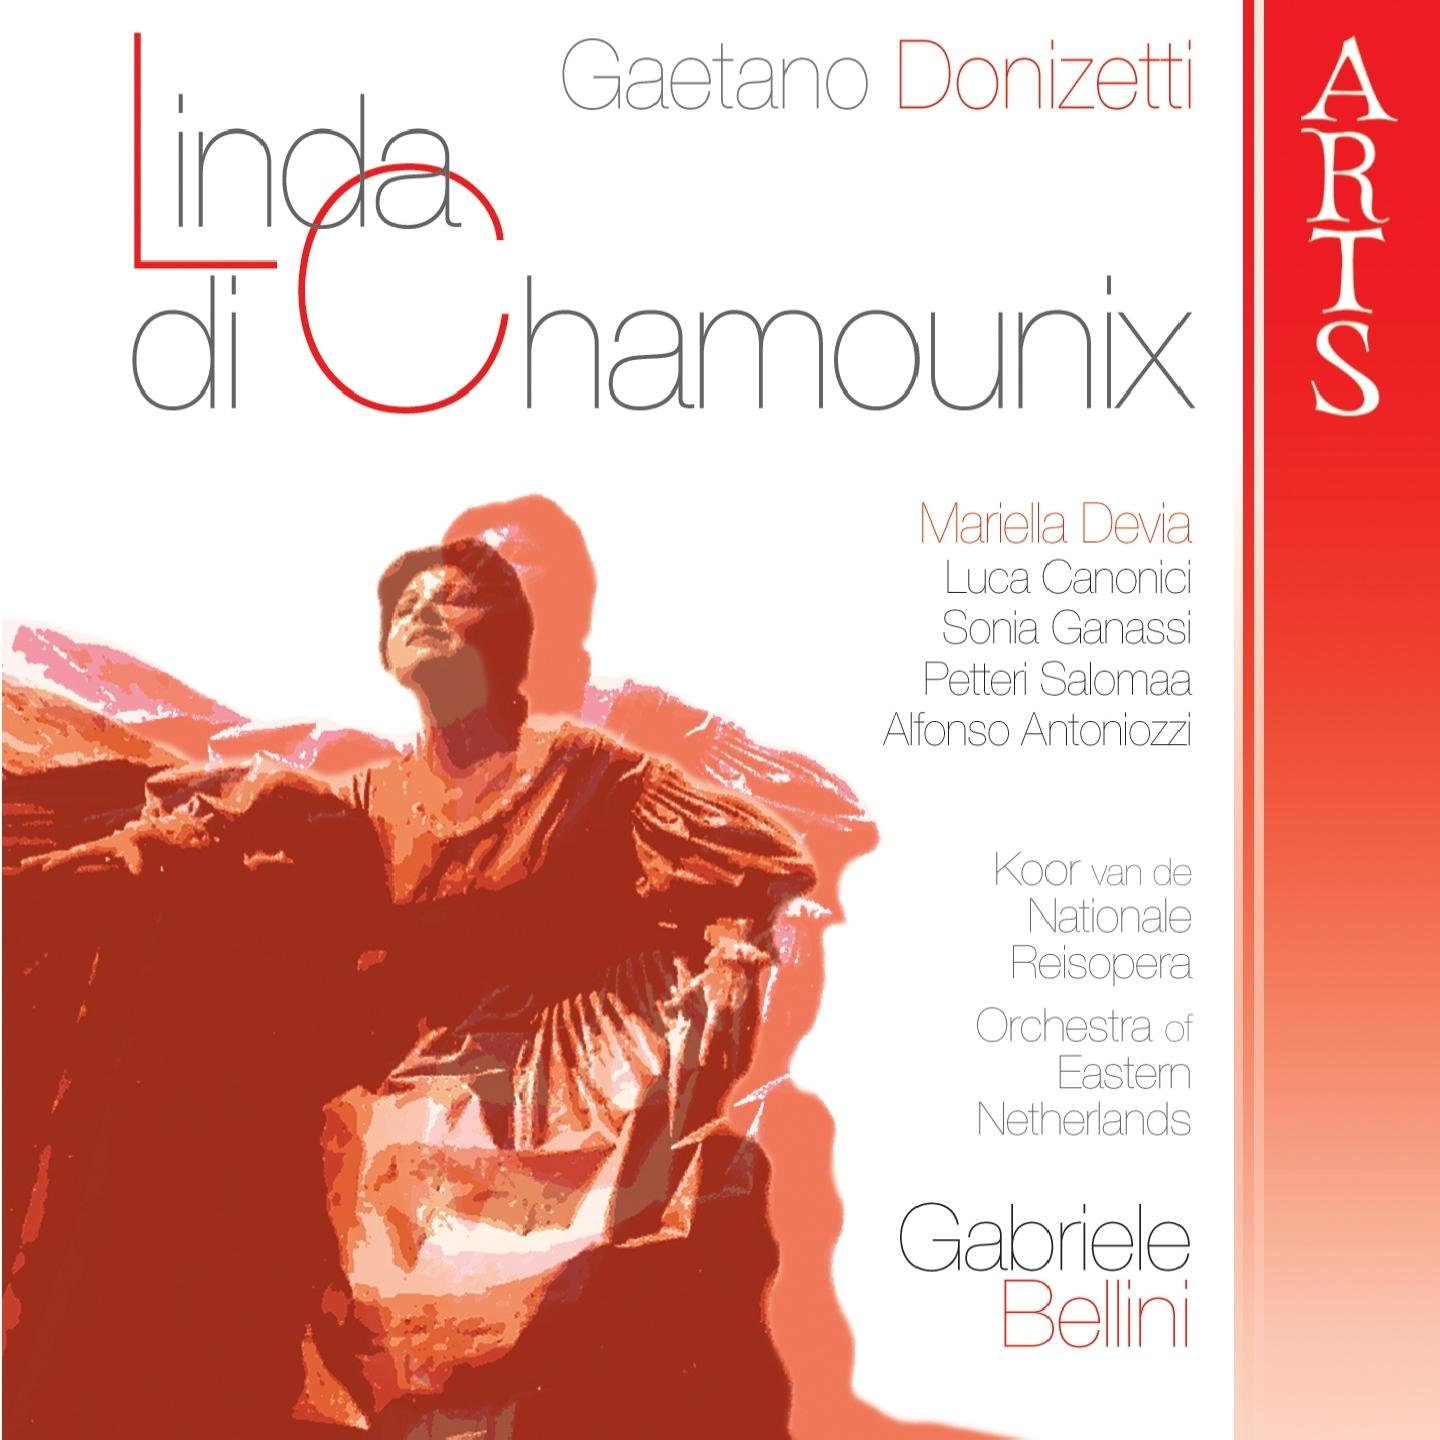 Linda di Chamounix: Act II - Parigi, Finale Secondo "Io vi lascio, permettete..."